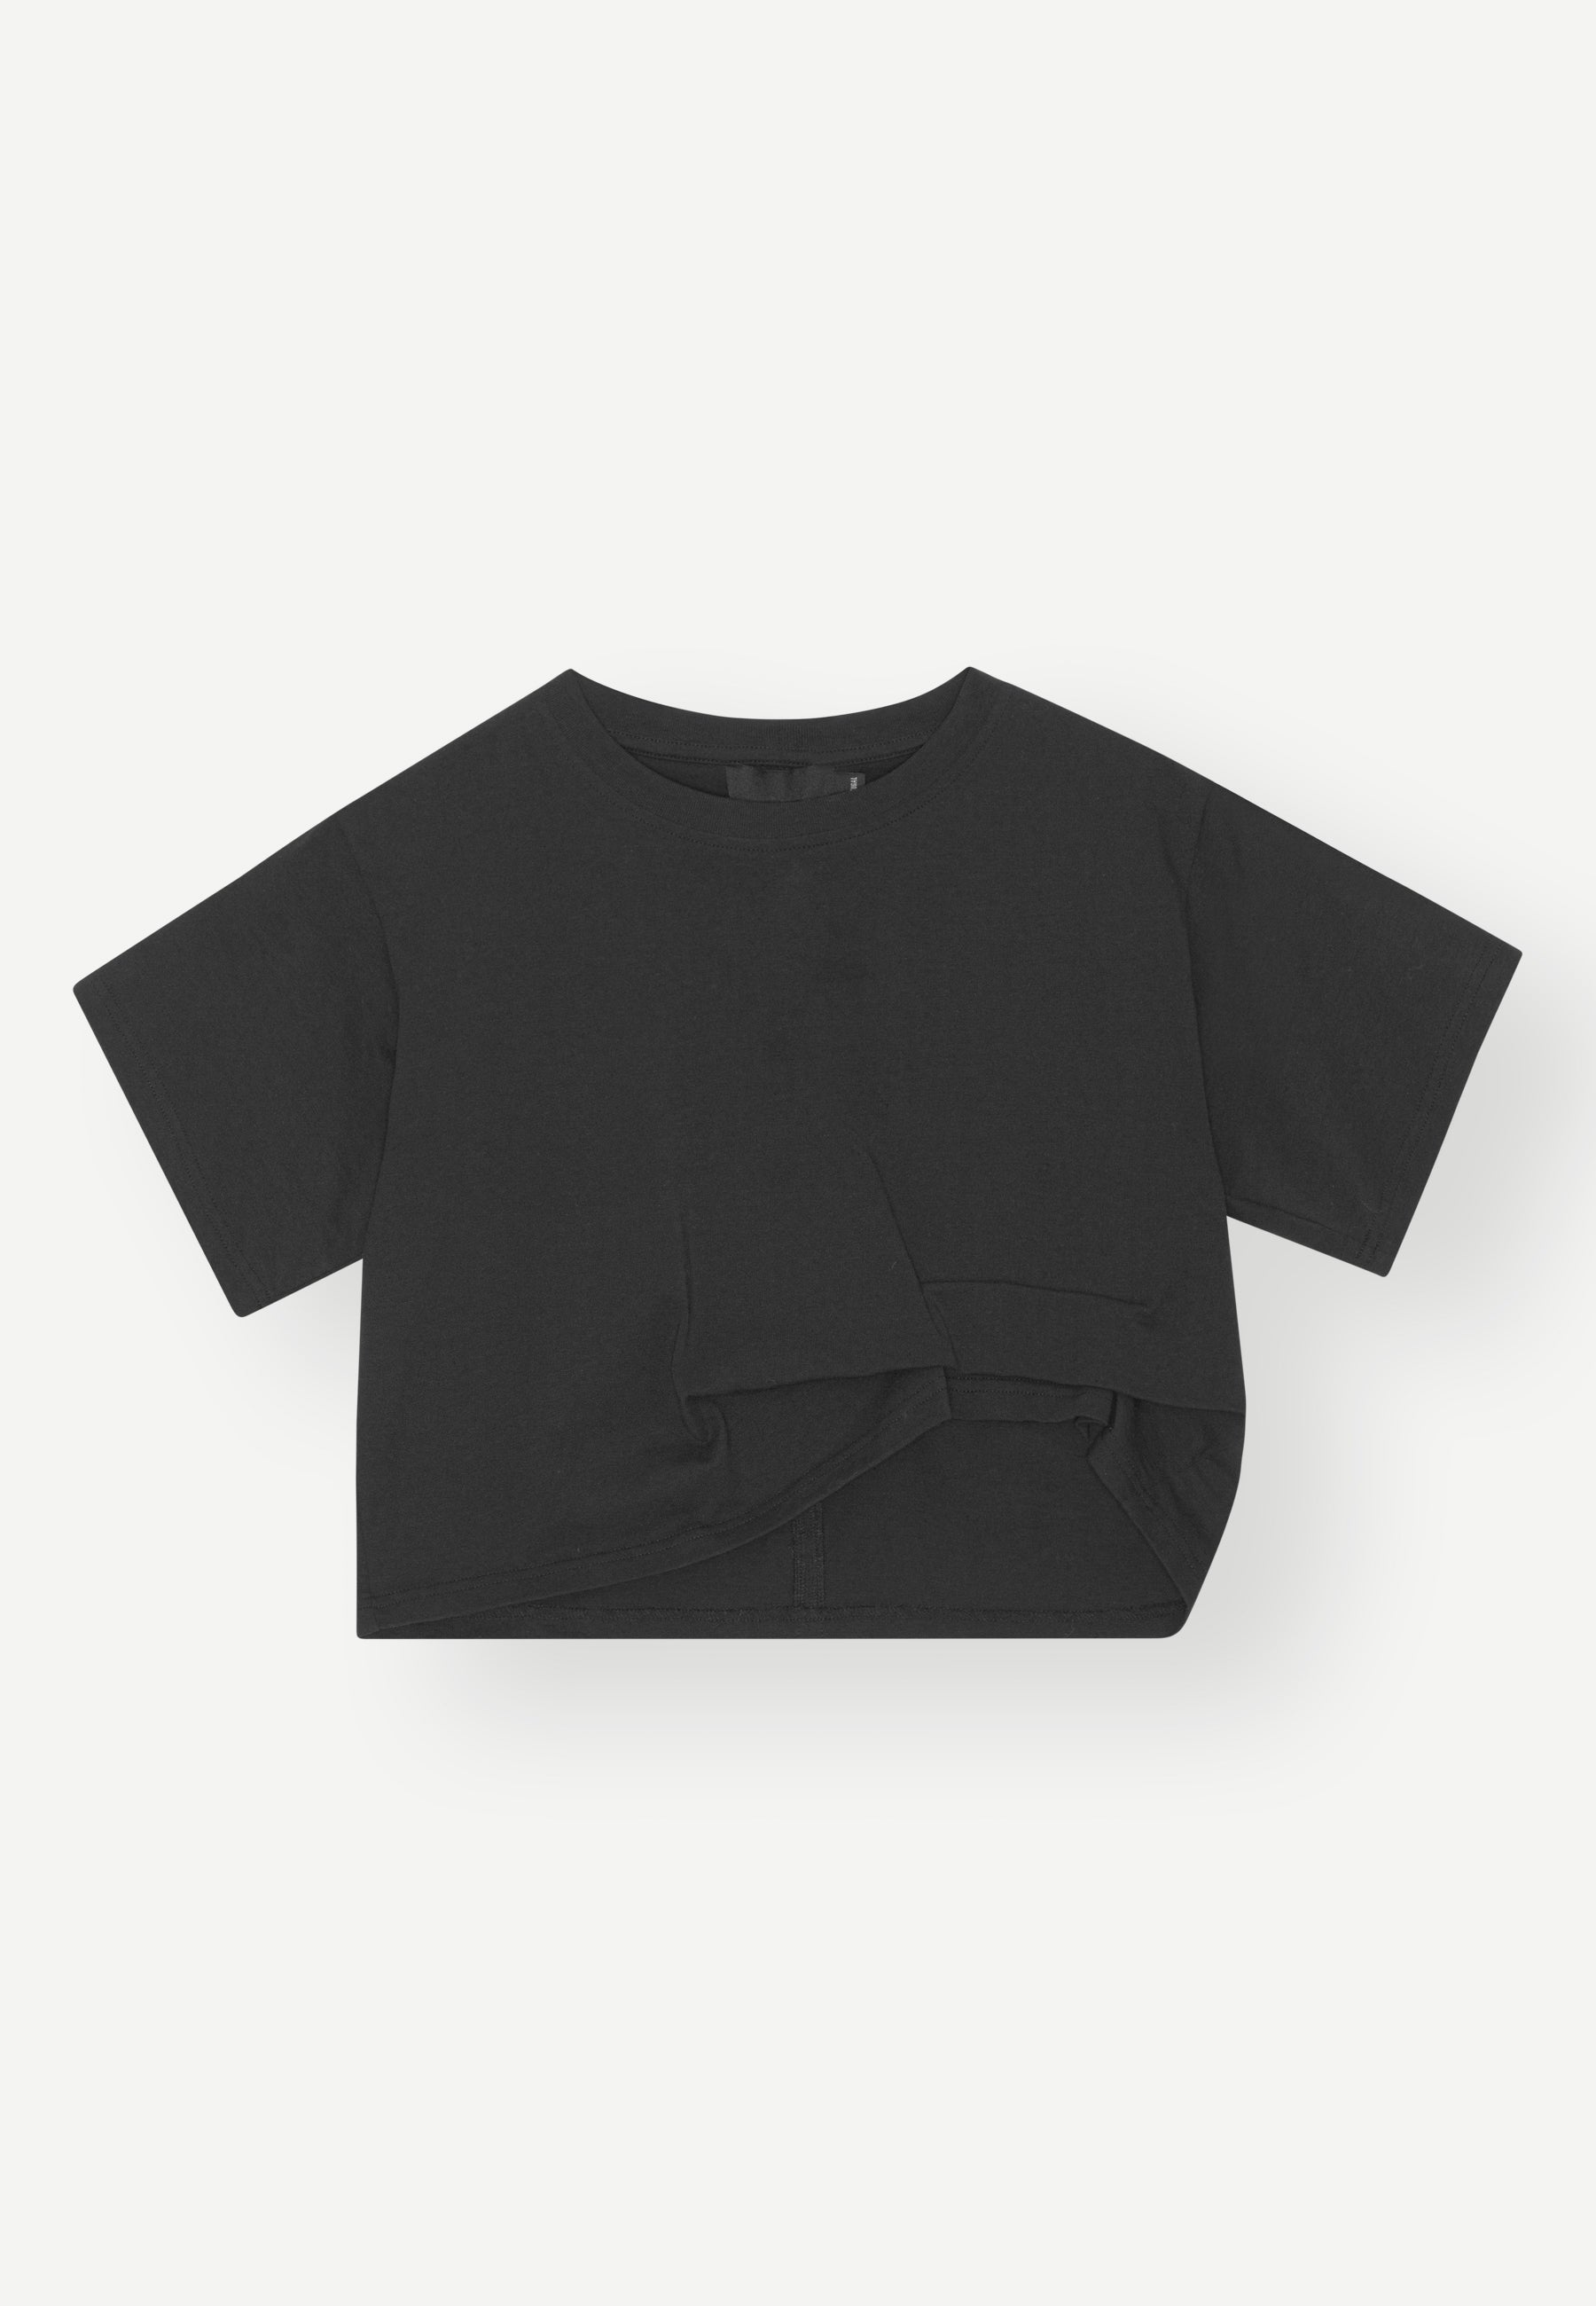 Irwin T-Shirt, Black